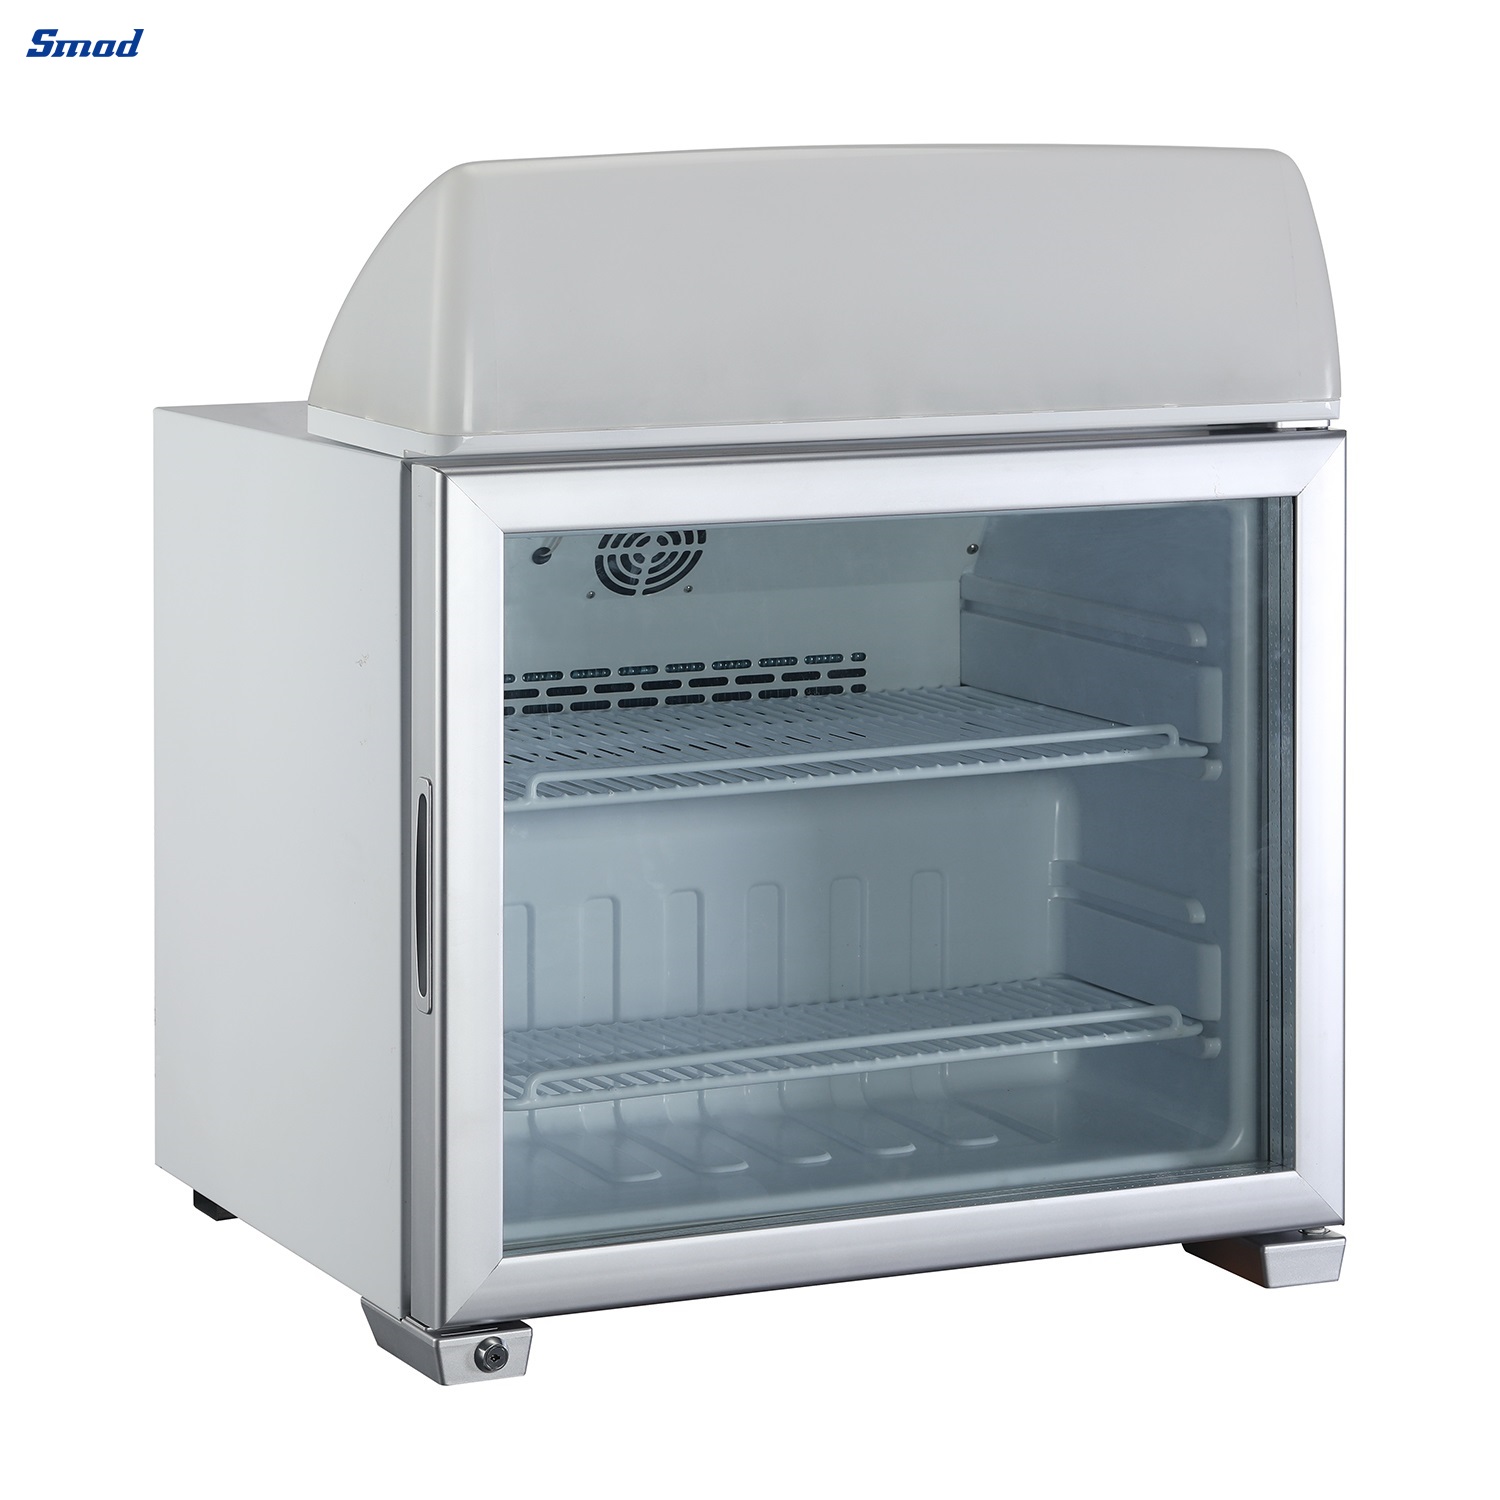 
Smad 49L Single Glass Door Countertop Ice Cream Display Freezer with Three-layer Glass Door